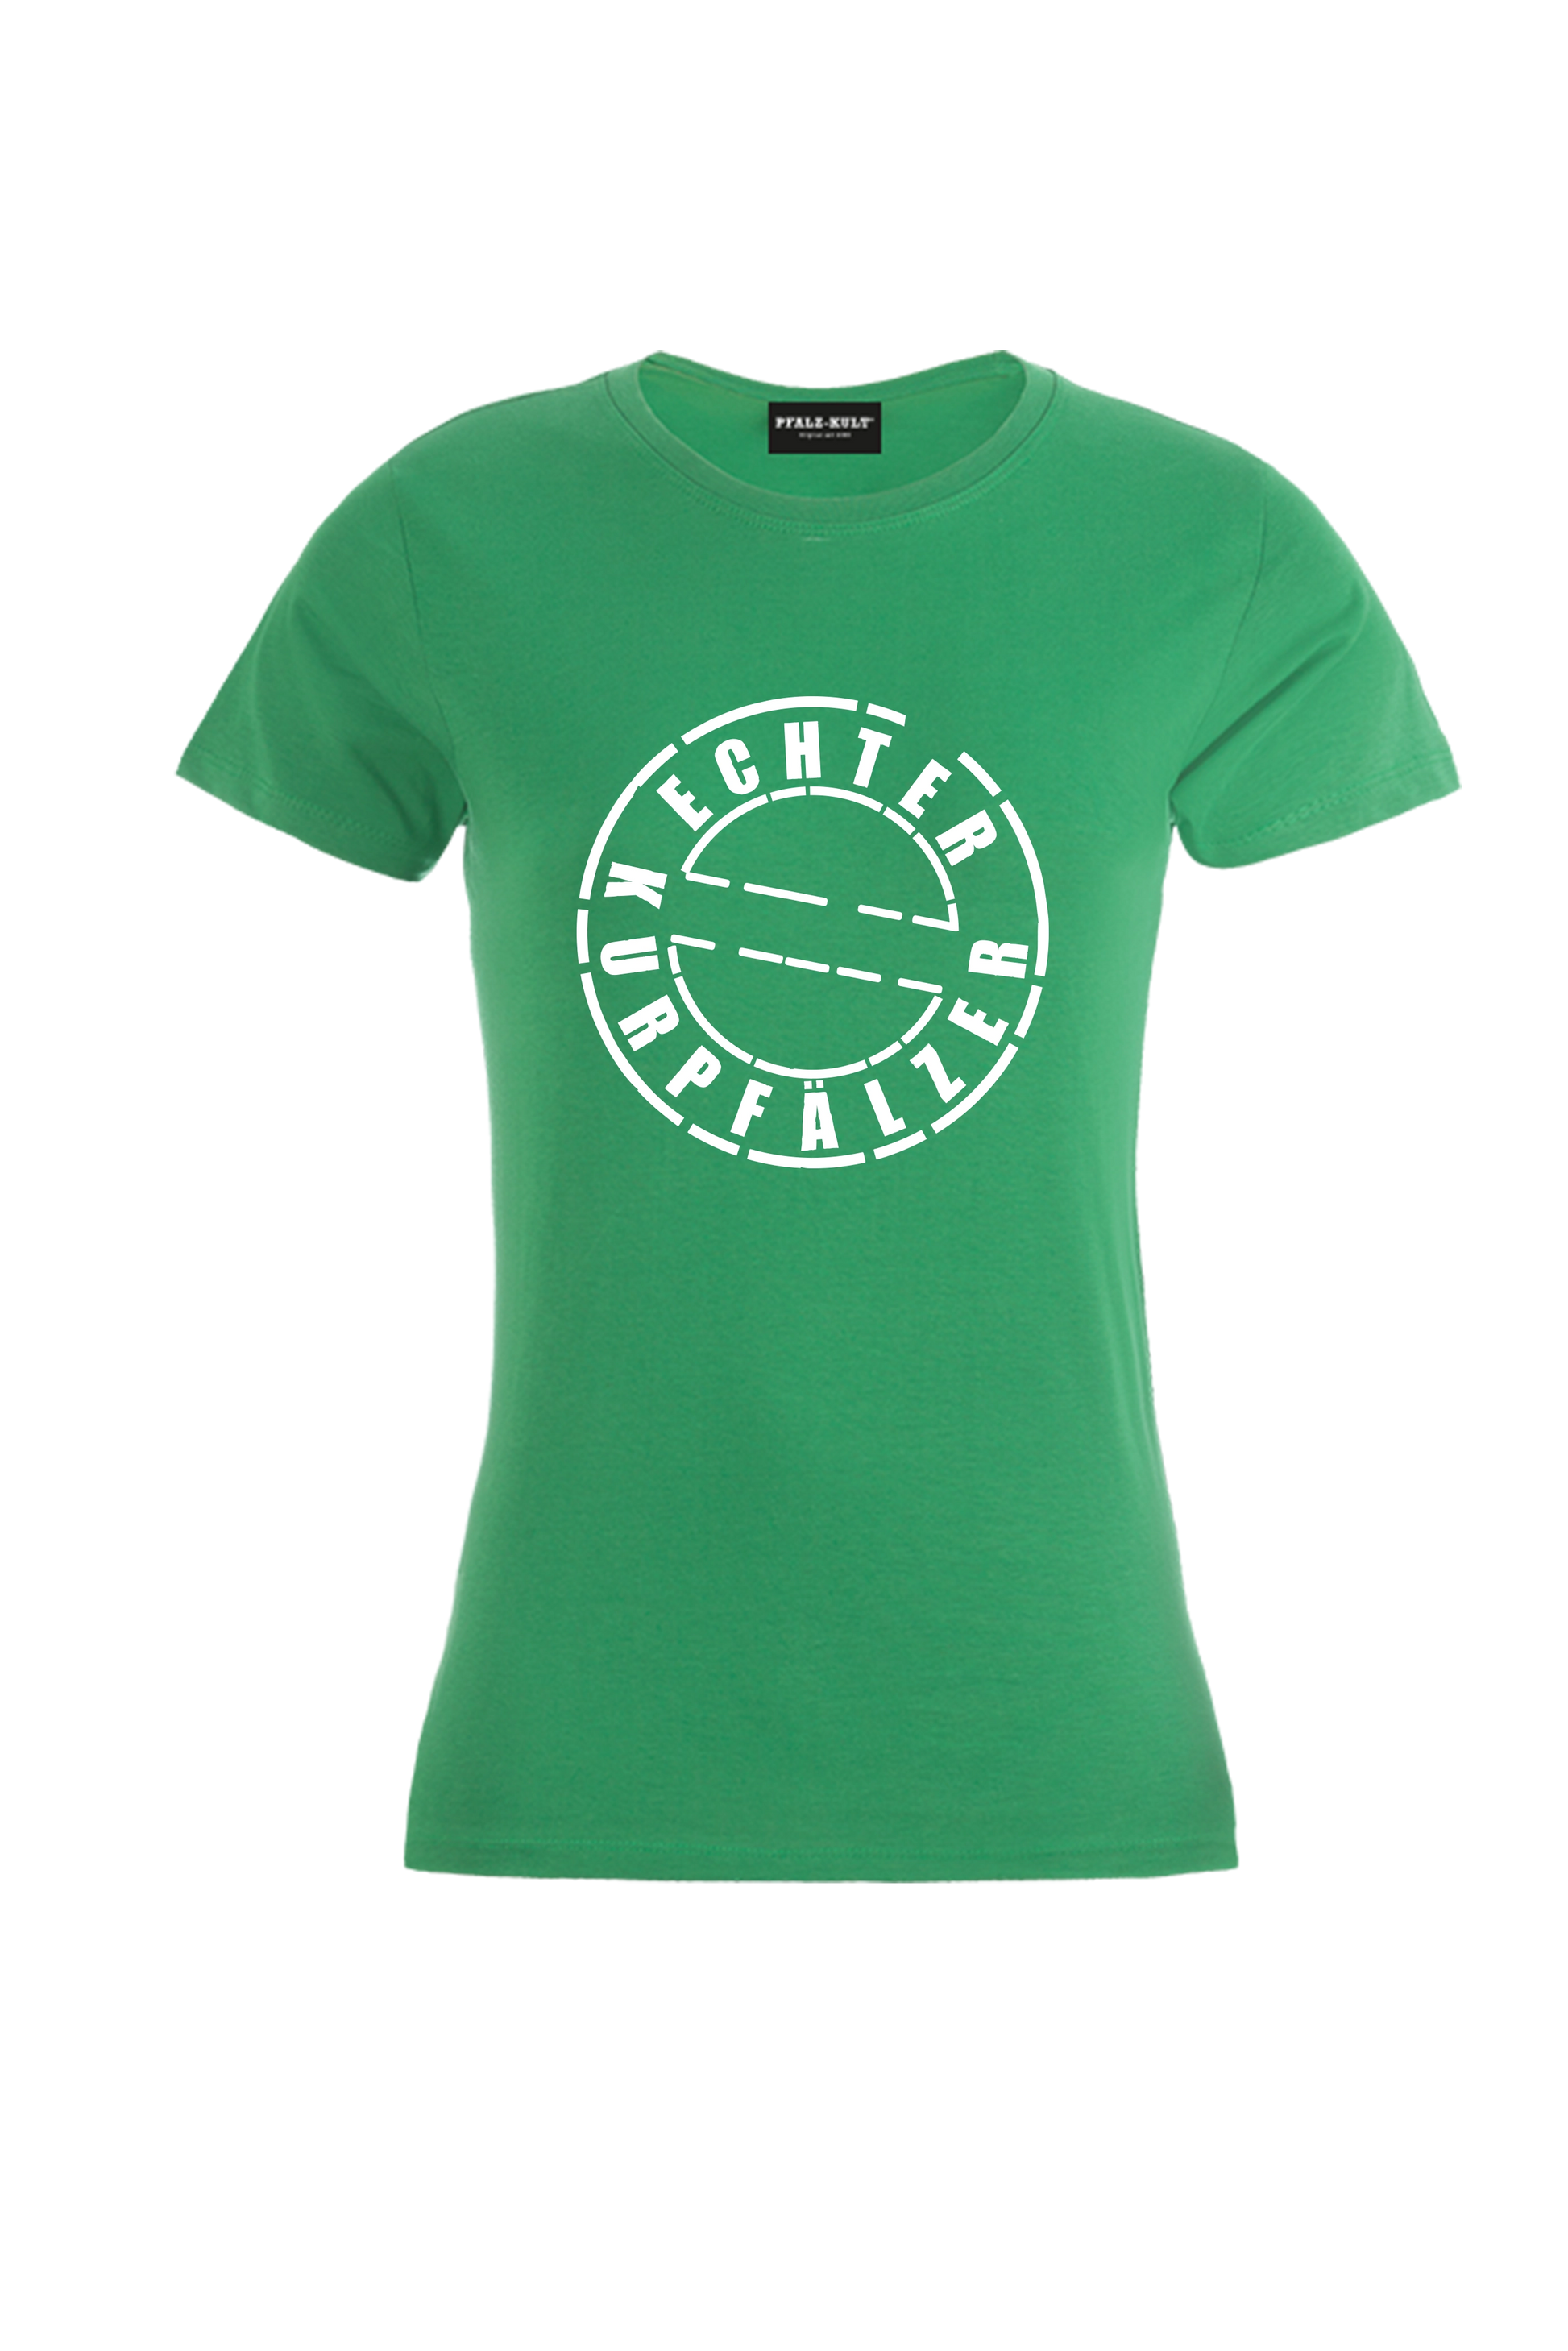 Grünes Damen T-Shirt mit dem Aufdruck "Echter Kurpfälzer" von Pfalz-Kult. Trendige Mode aus der Pfalz für Pälzr.